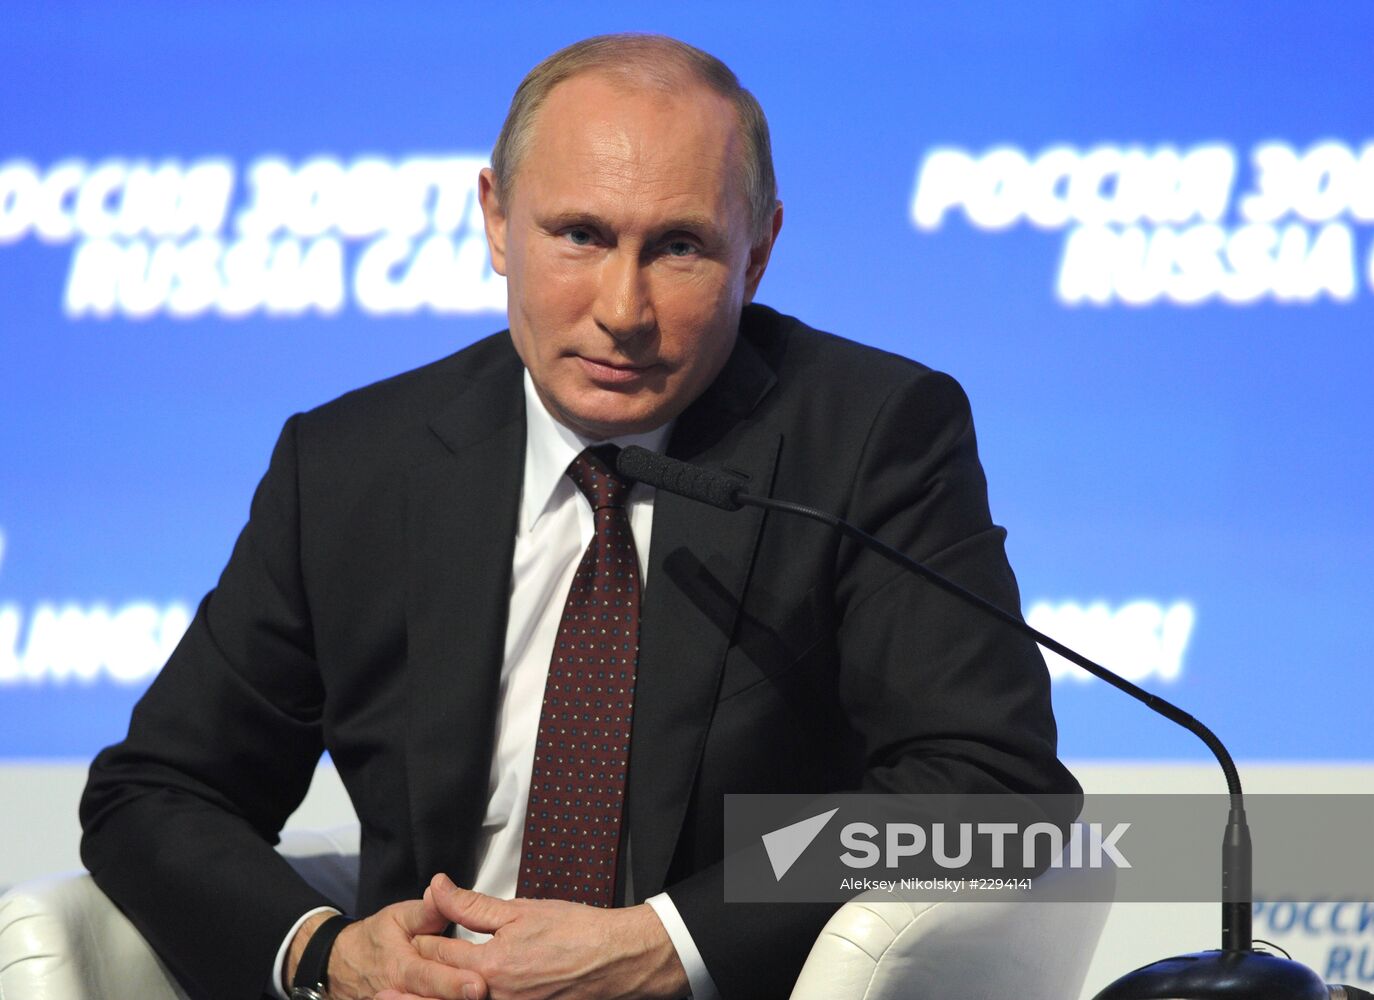 Vladimir Putin at VTB Capital Forum Russia Calling